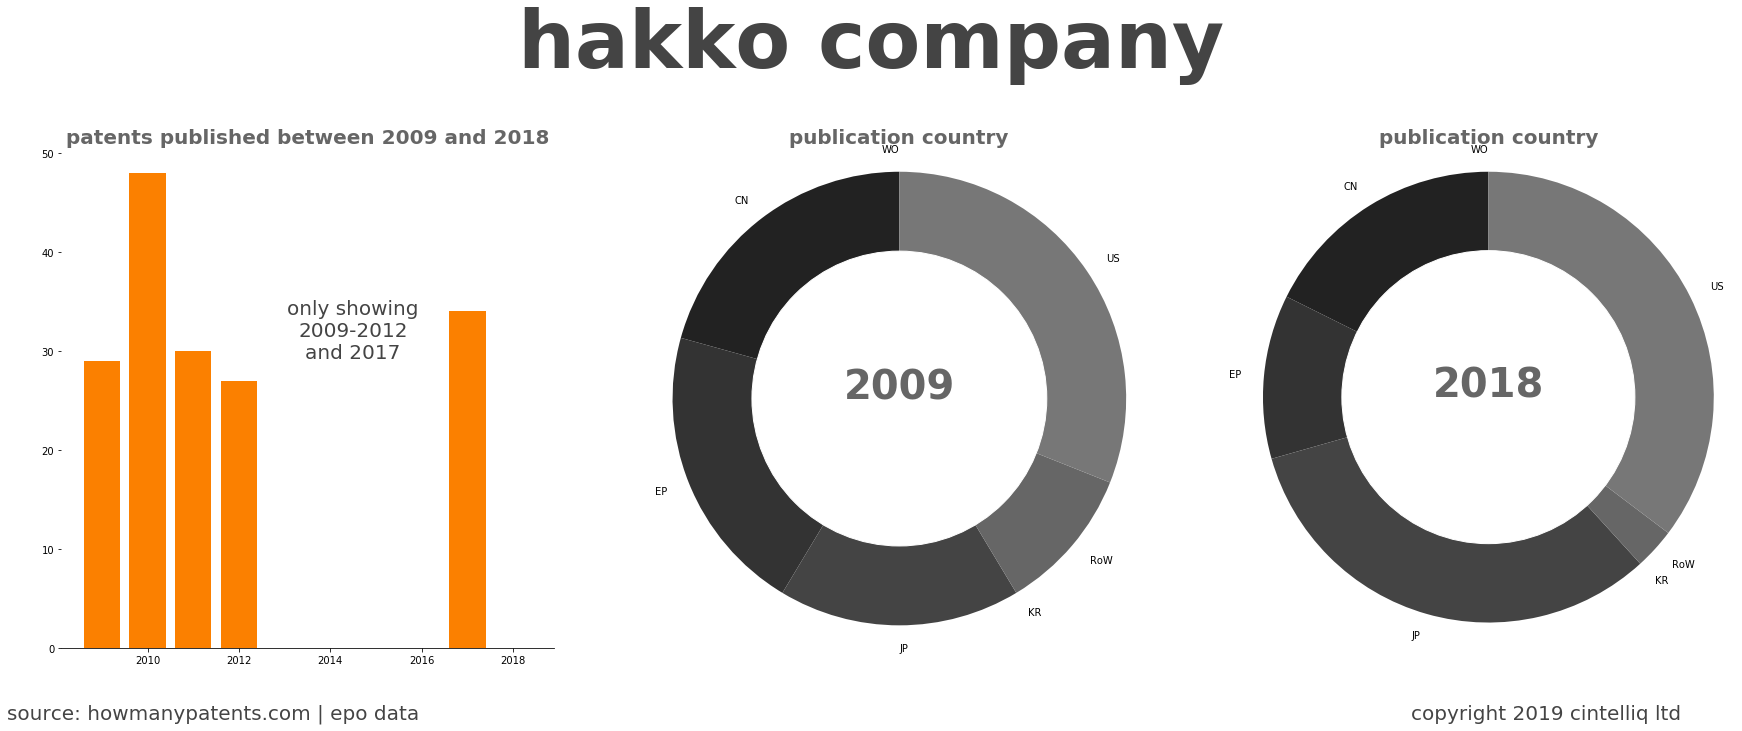 summary of patents for Hakko Company